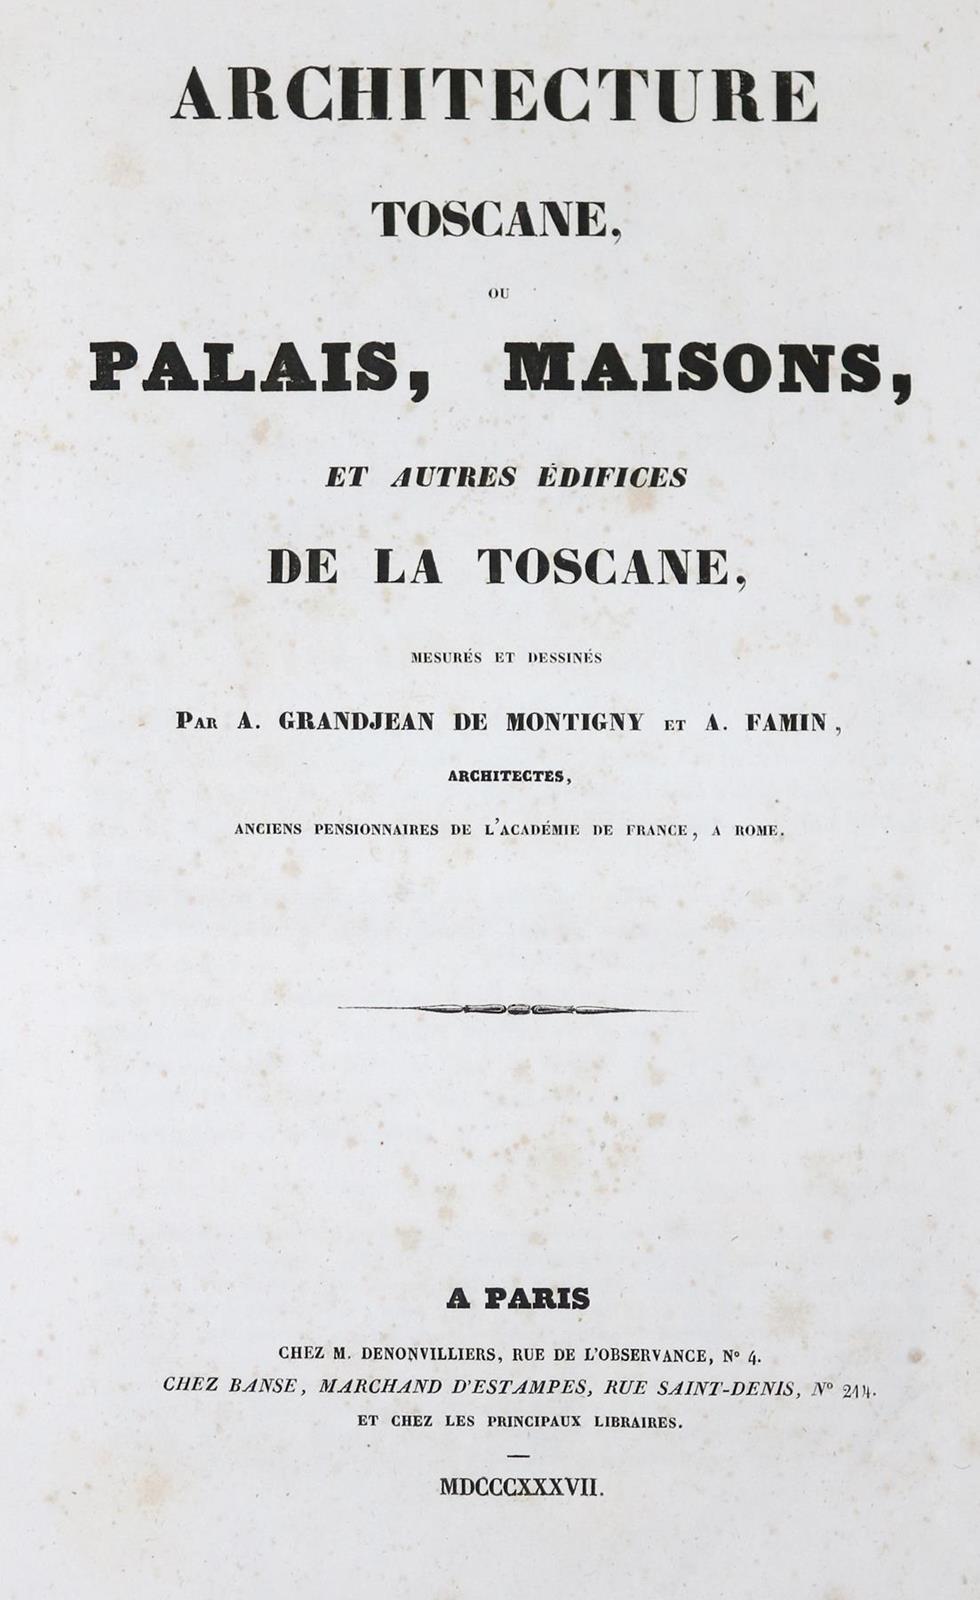 Grandjean de Montigny,A. u. A.Famin. - Image 2 of 2